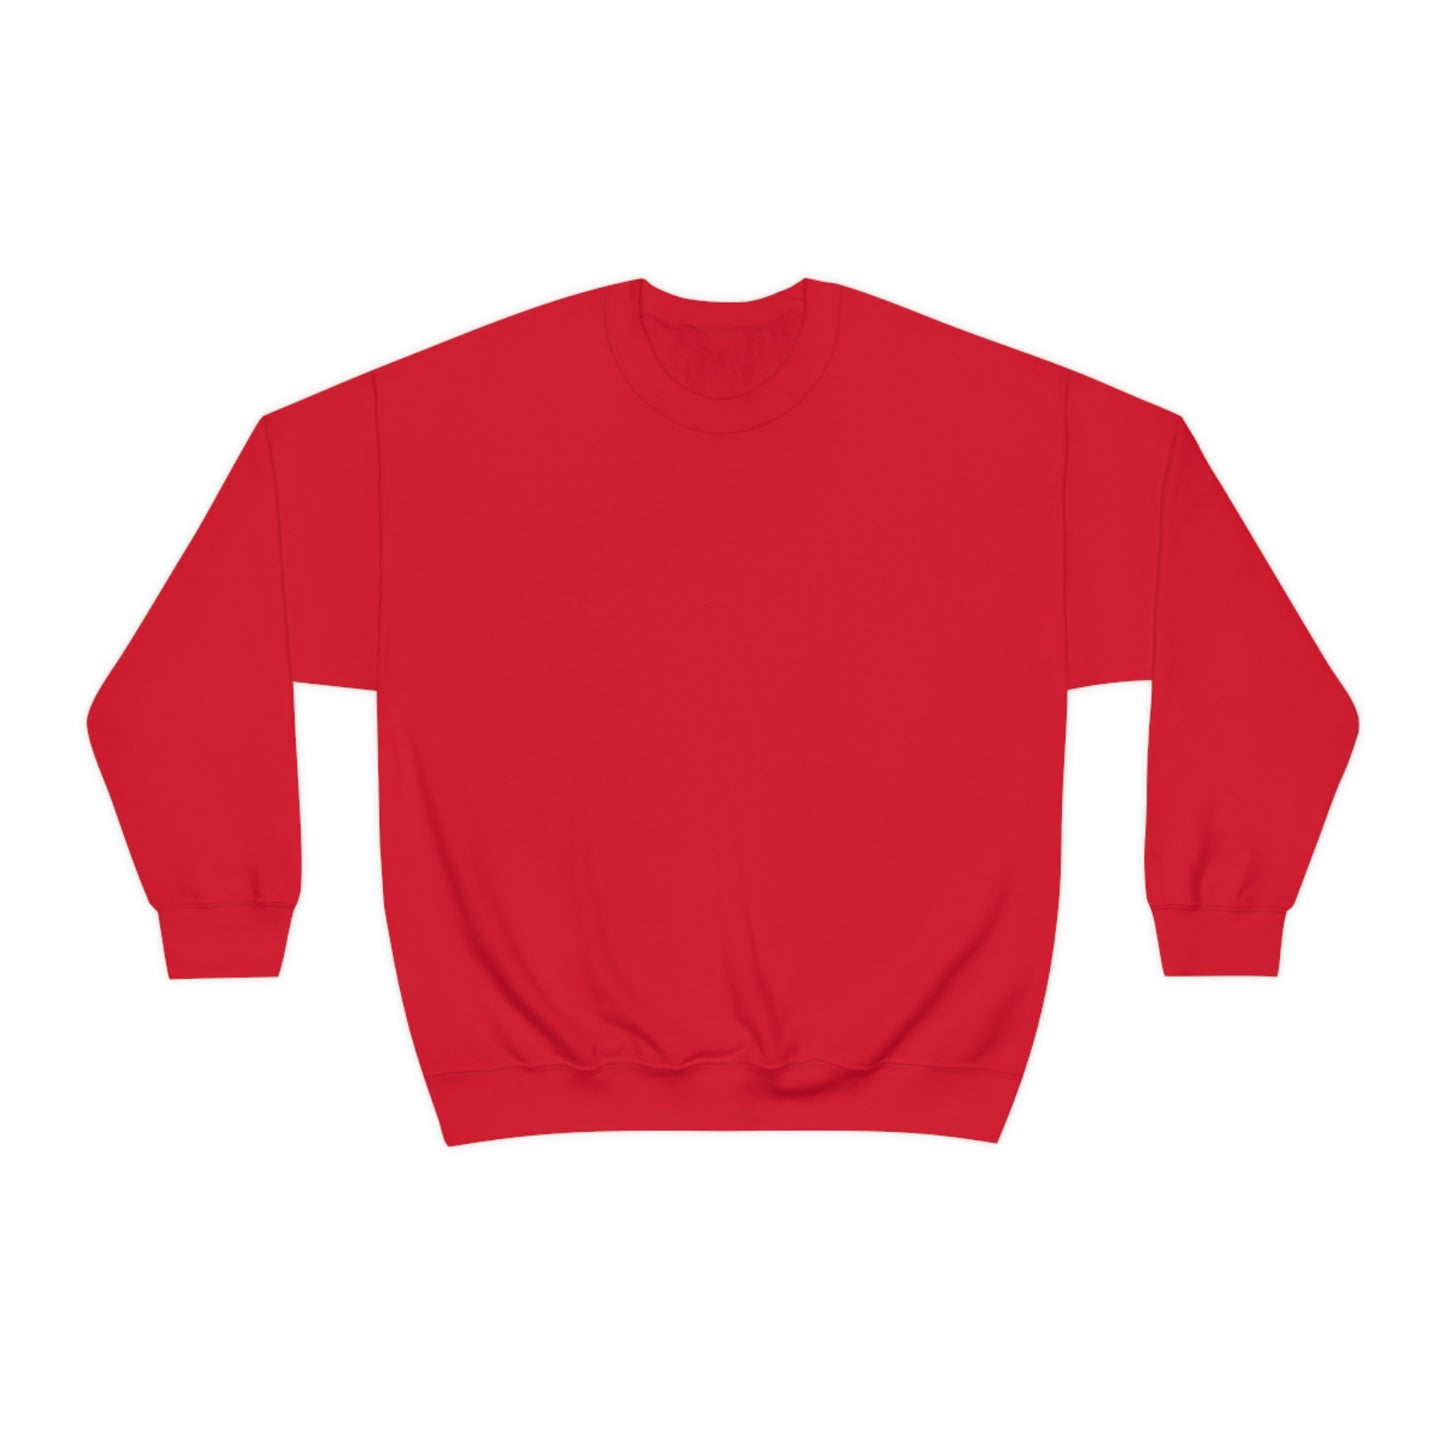 Members Club Crewneck Sweatshirt